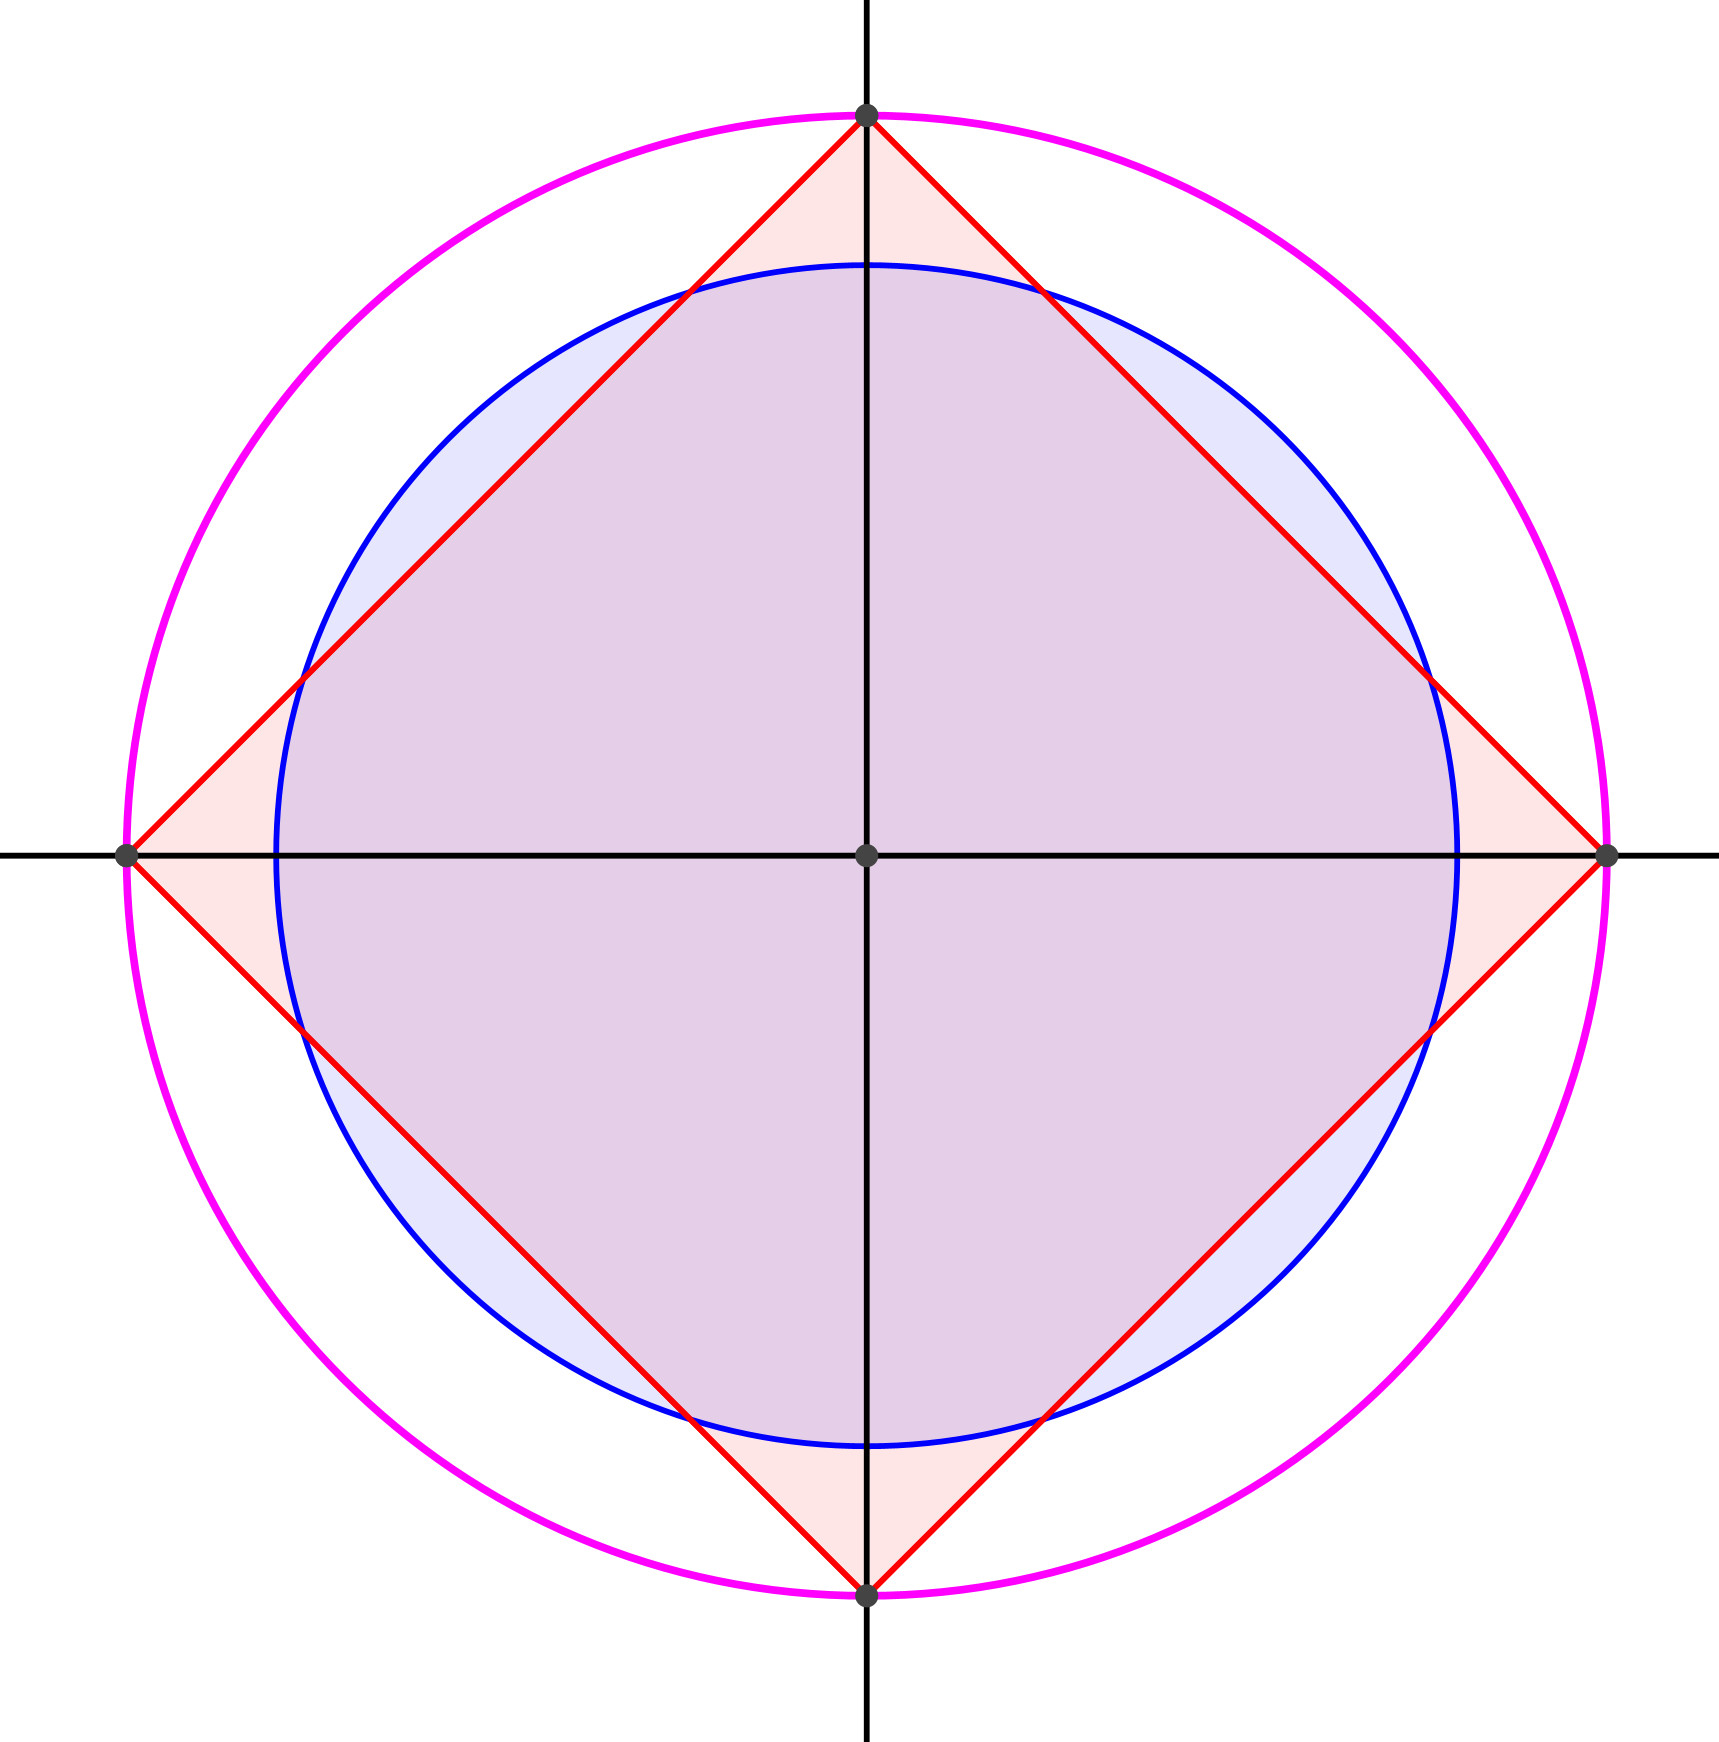 Ein Bild, das Diagramm, Kreis, Reihe, Origami enthält.

Automatisch generierte Beschreibung